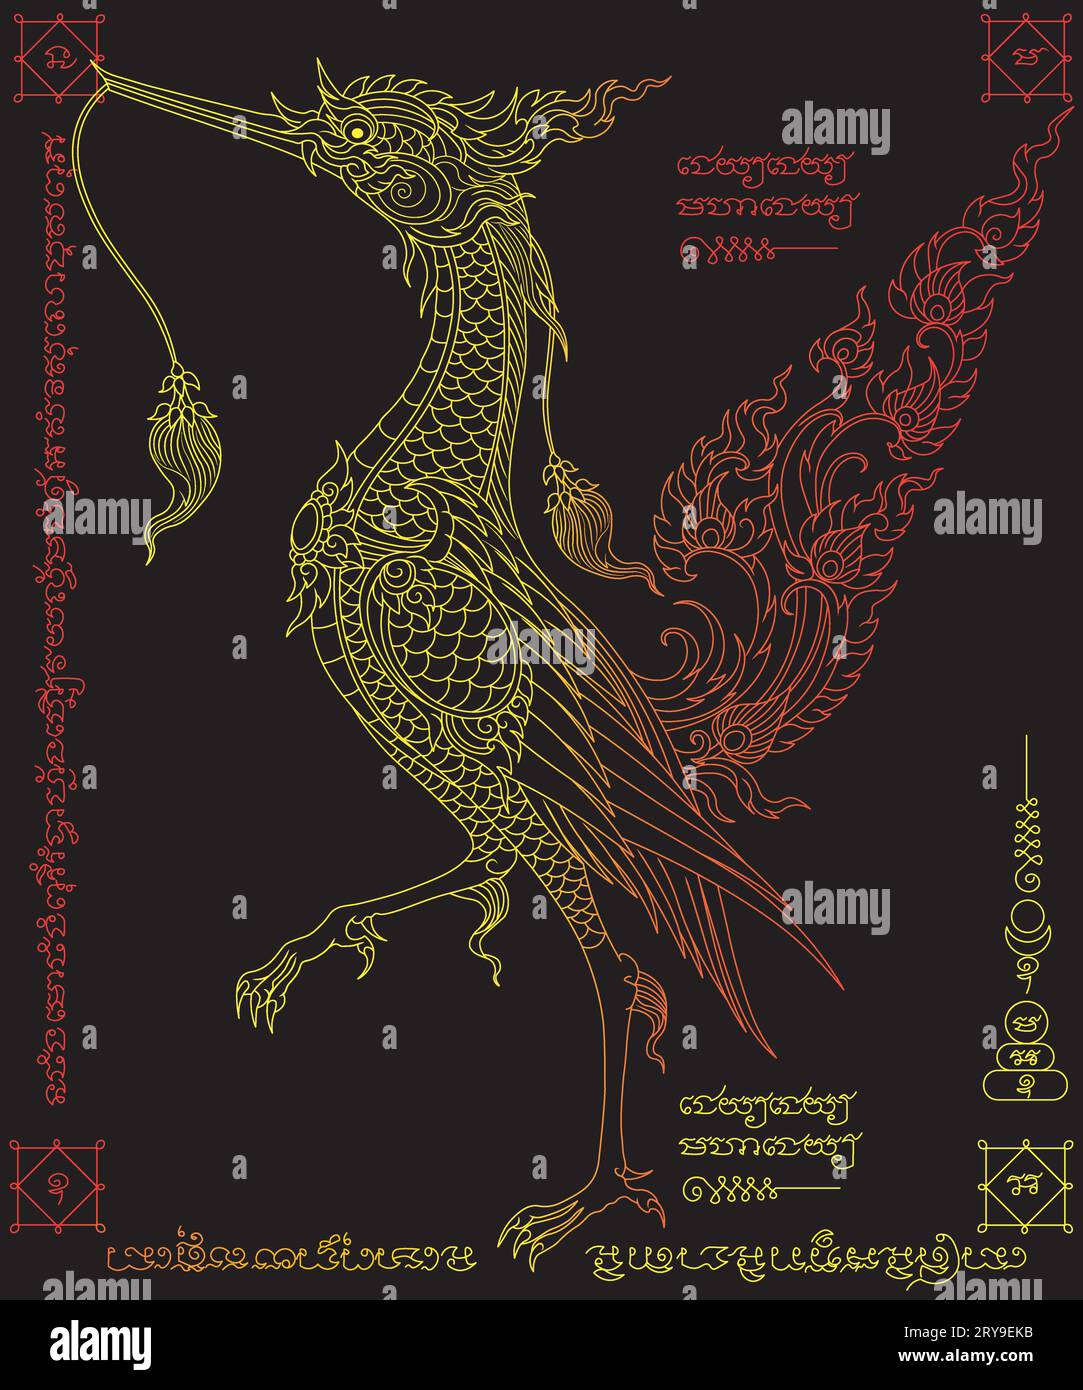 Cygne doré sur fond noir.Swan tatouage lignes dorées.Ancient oiseau traditionnel thaï art.thai tattoo.Sak Yan talisman tatouage thaï traditionnel Illustration de Vecteur